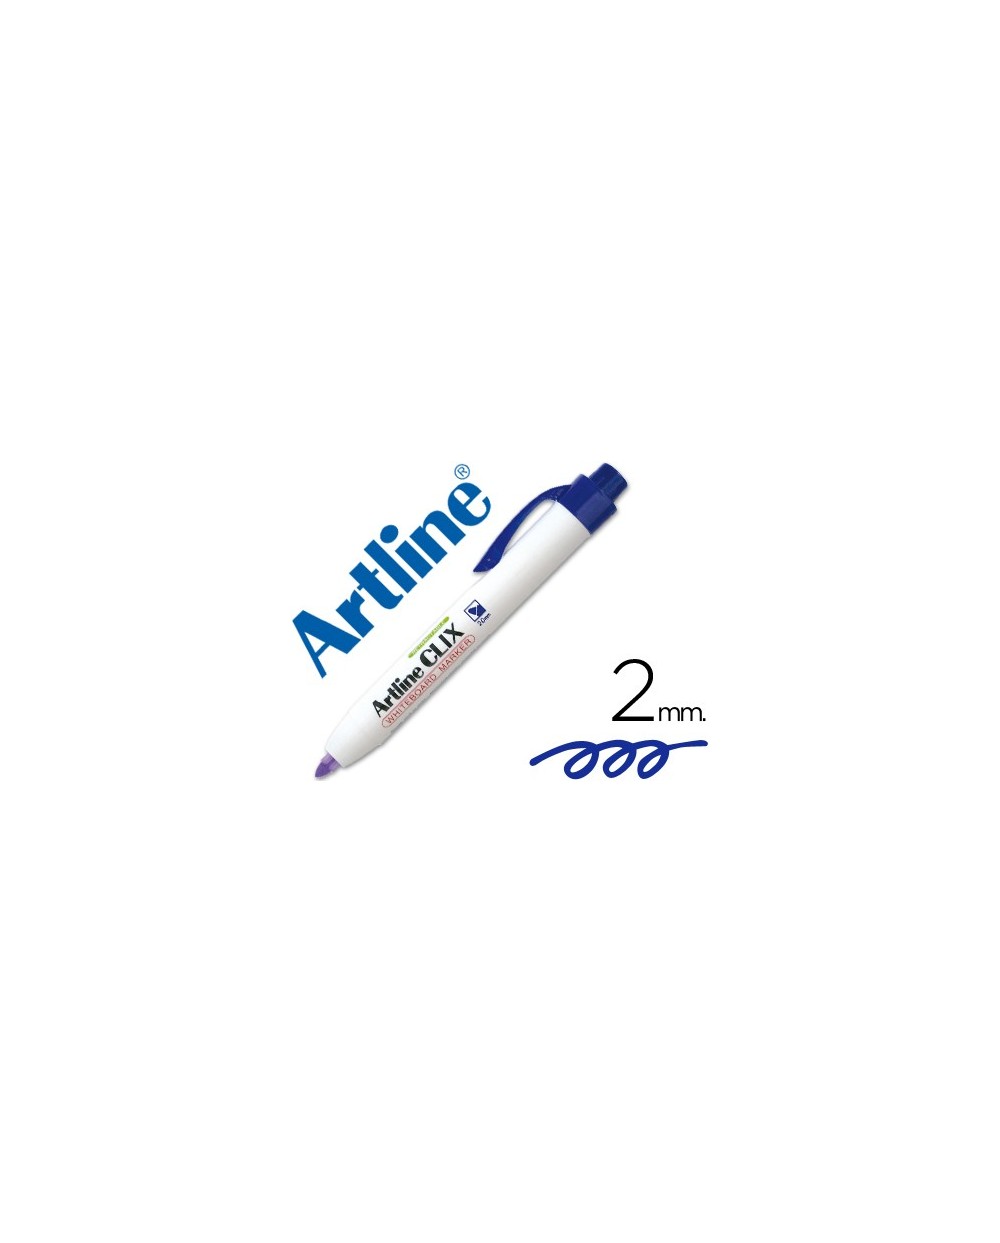 Rotulador artline clix pizarra ek 573a azul punta retactil redonda 200 mm